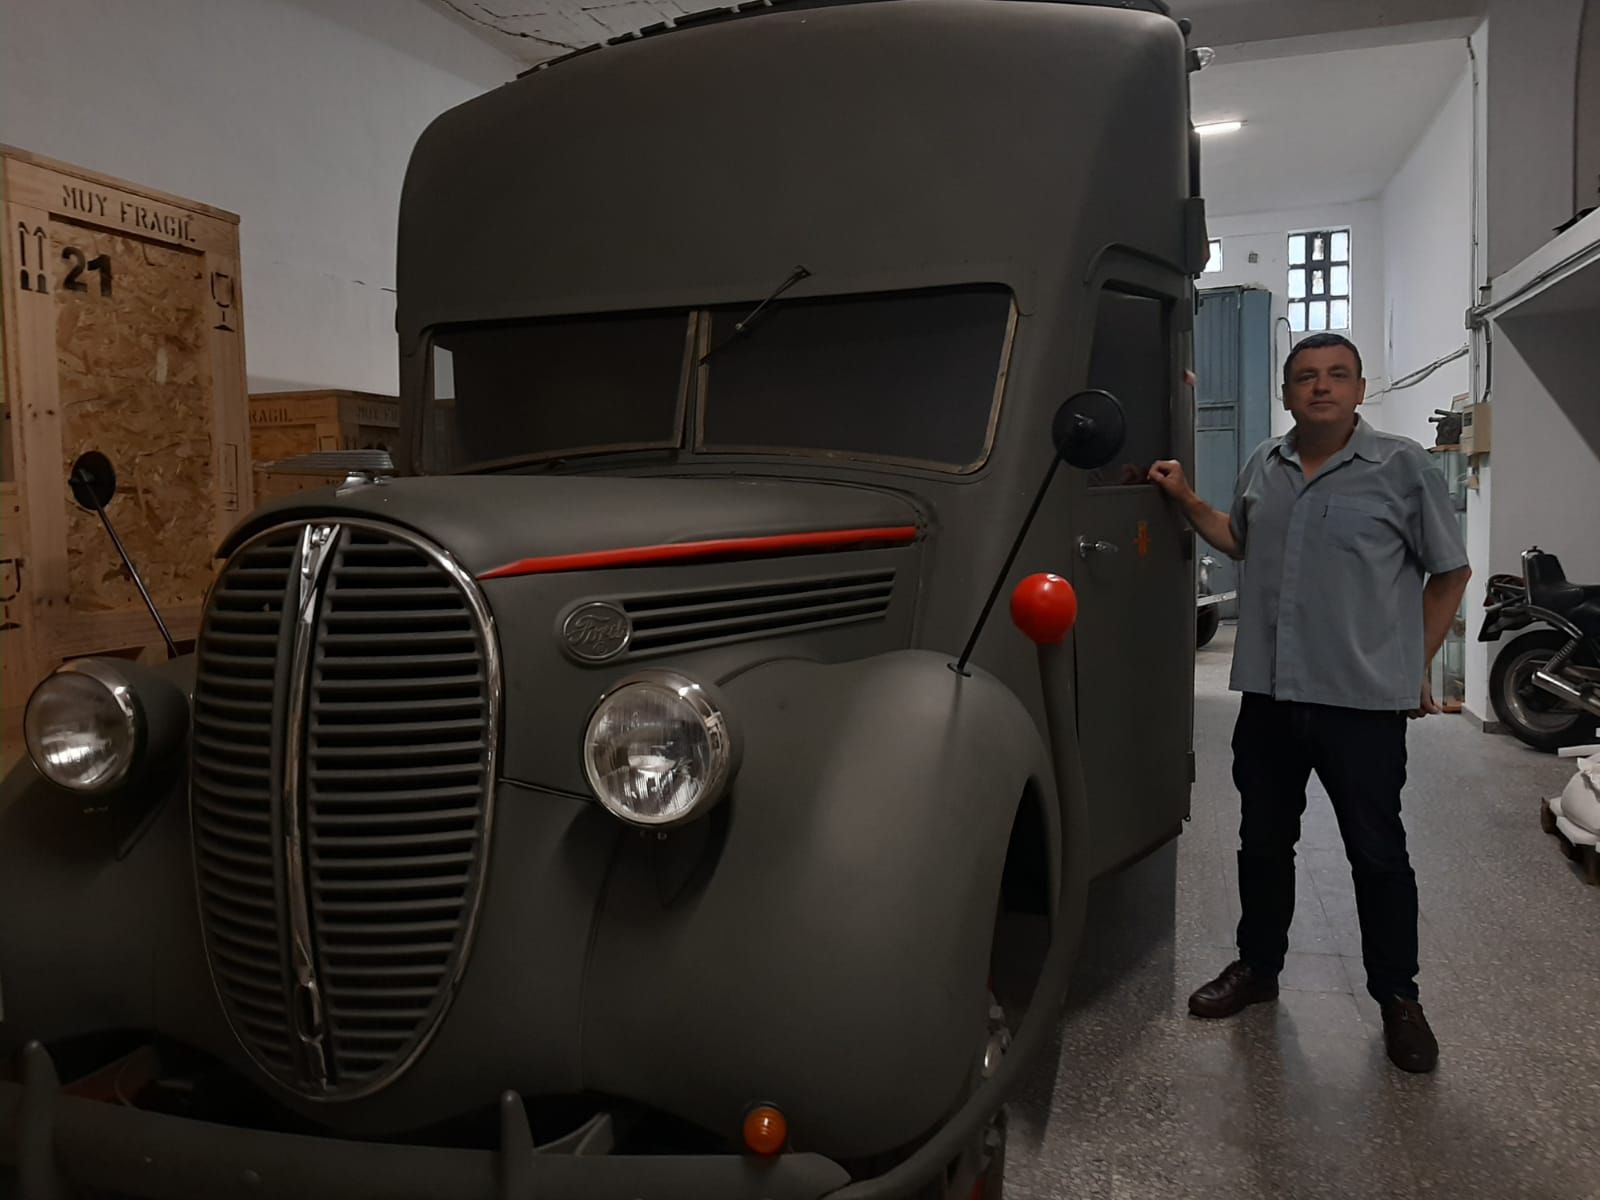 Un tesoro militar en busca de museo: así es la colección de Jorge Sandoval en Colloto